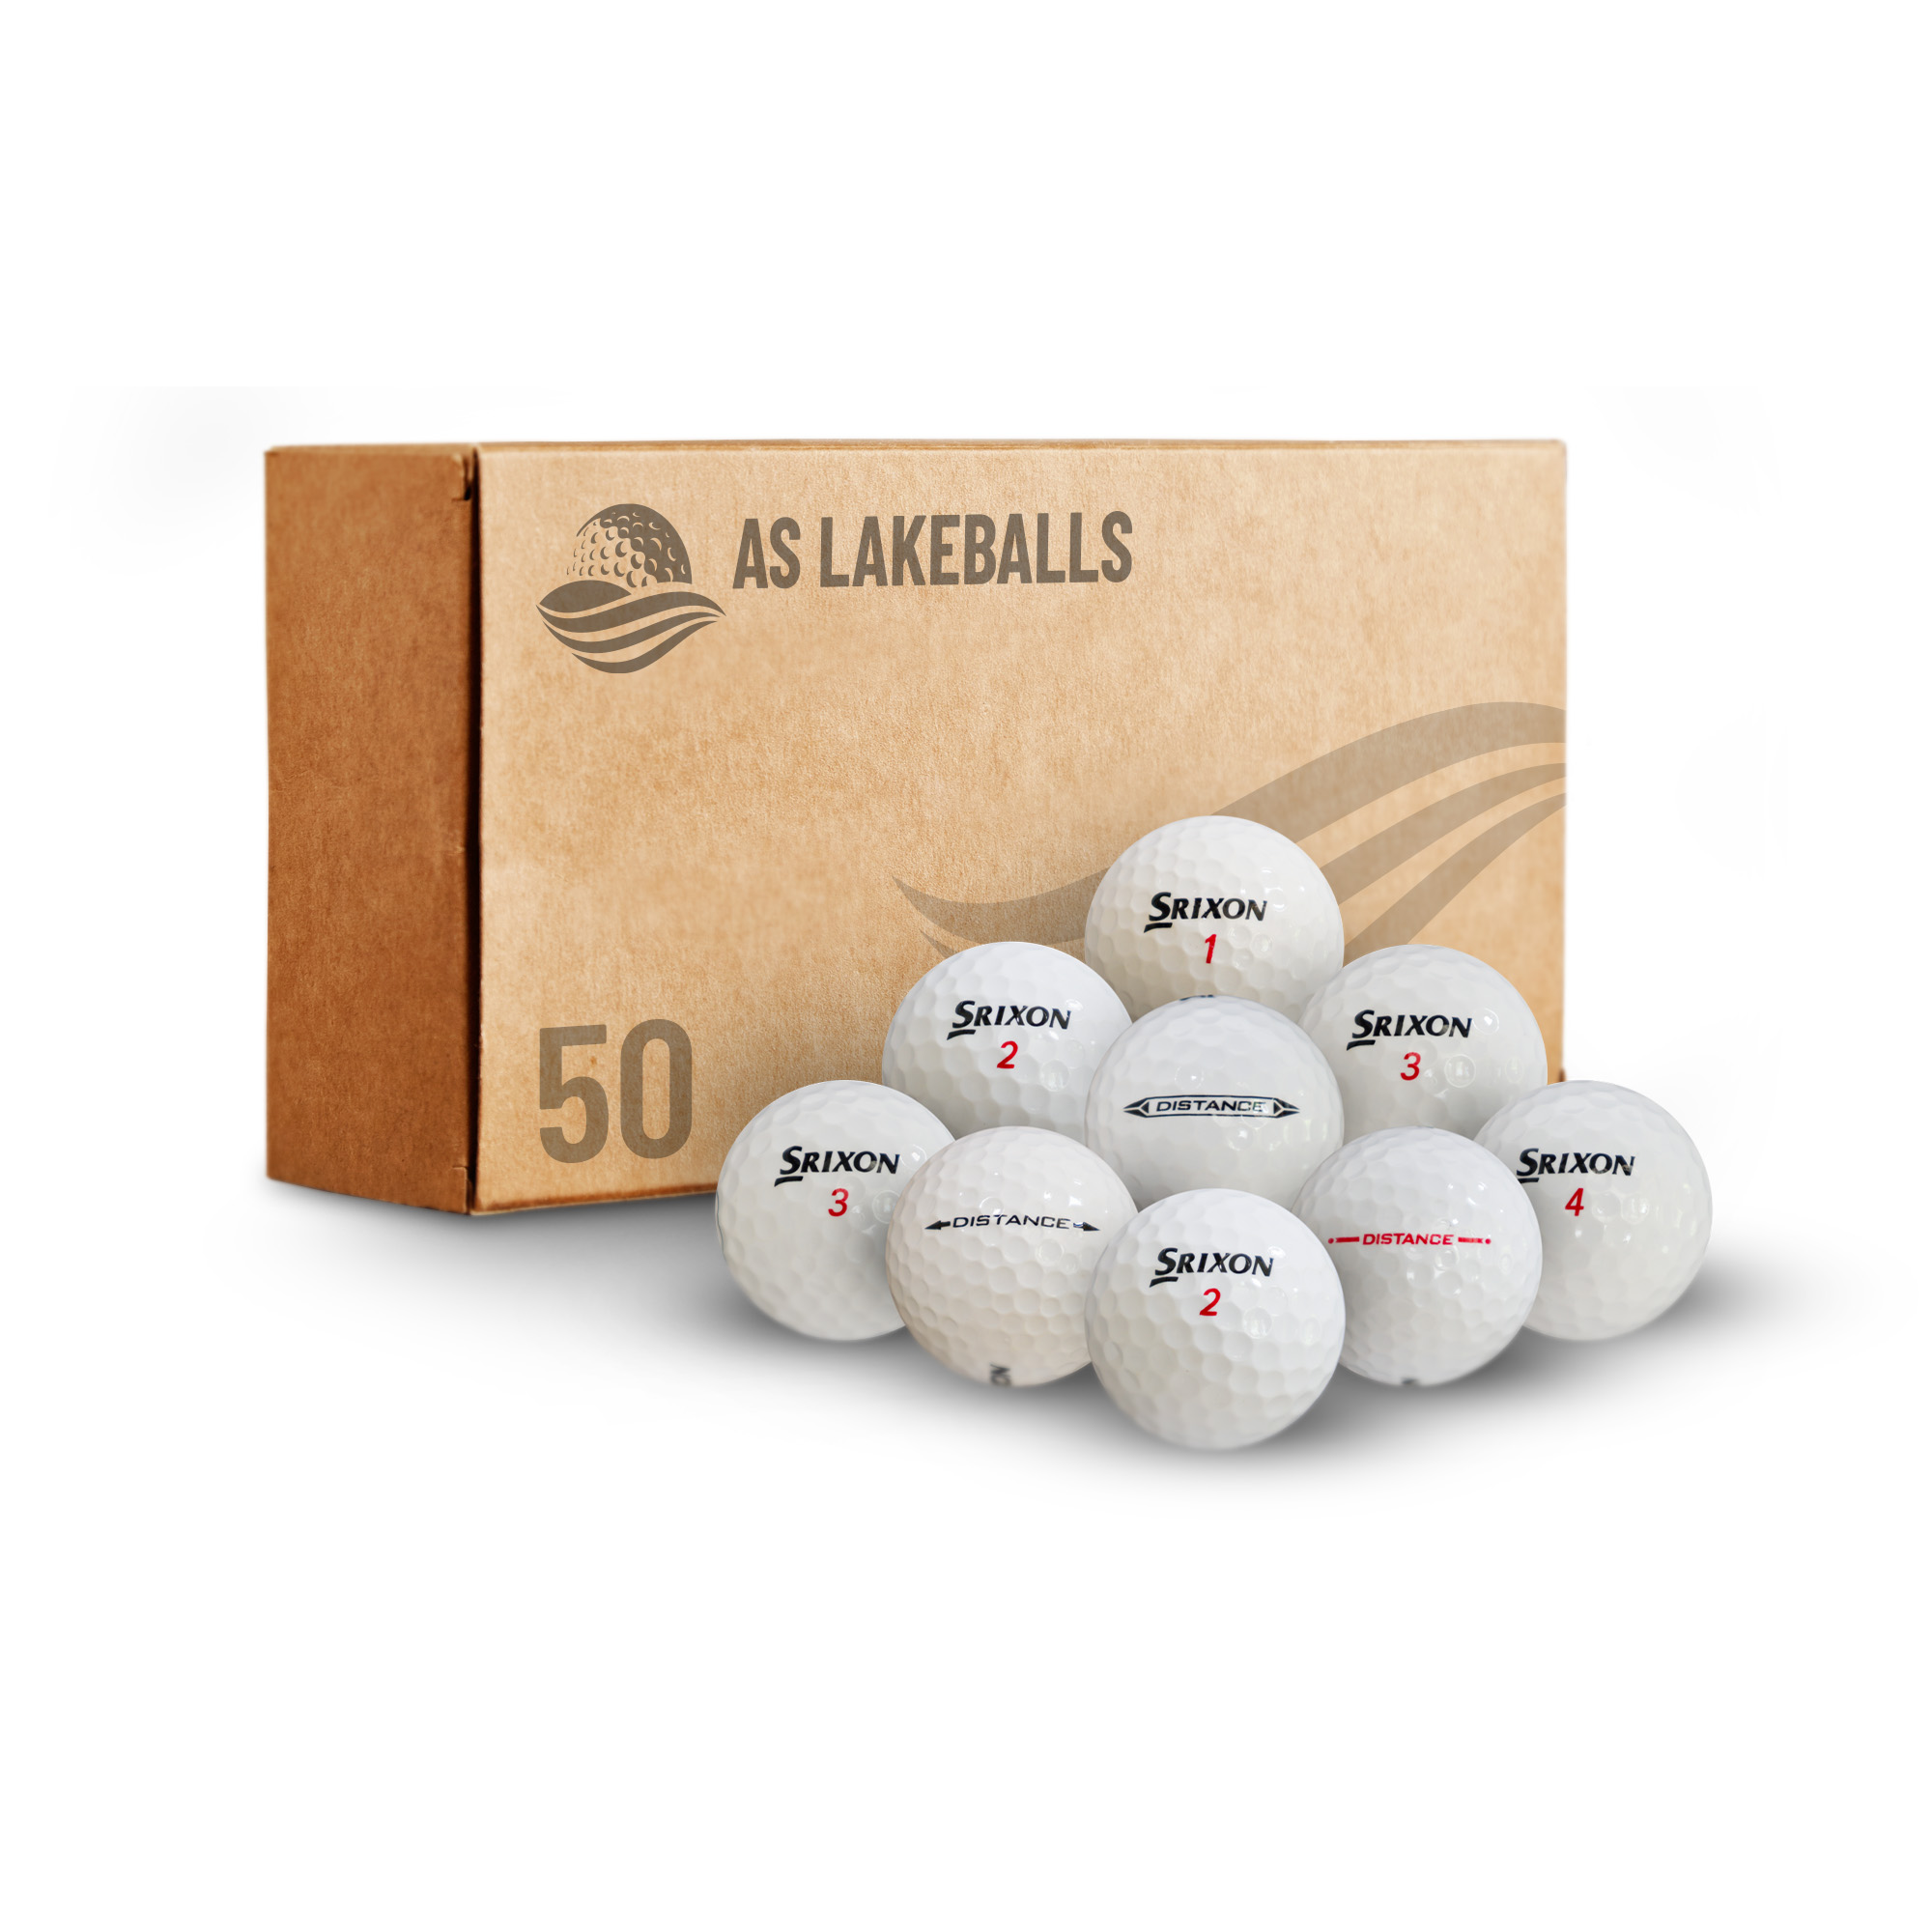 50 Srixon Distance AA-AAA bei AS Lakeballs günstig kaufen